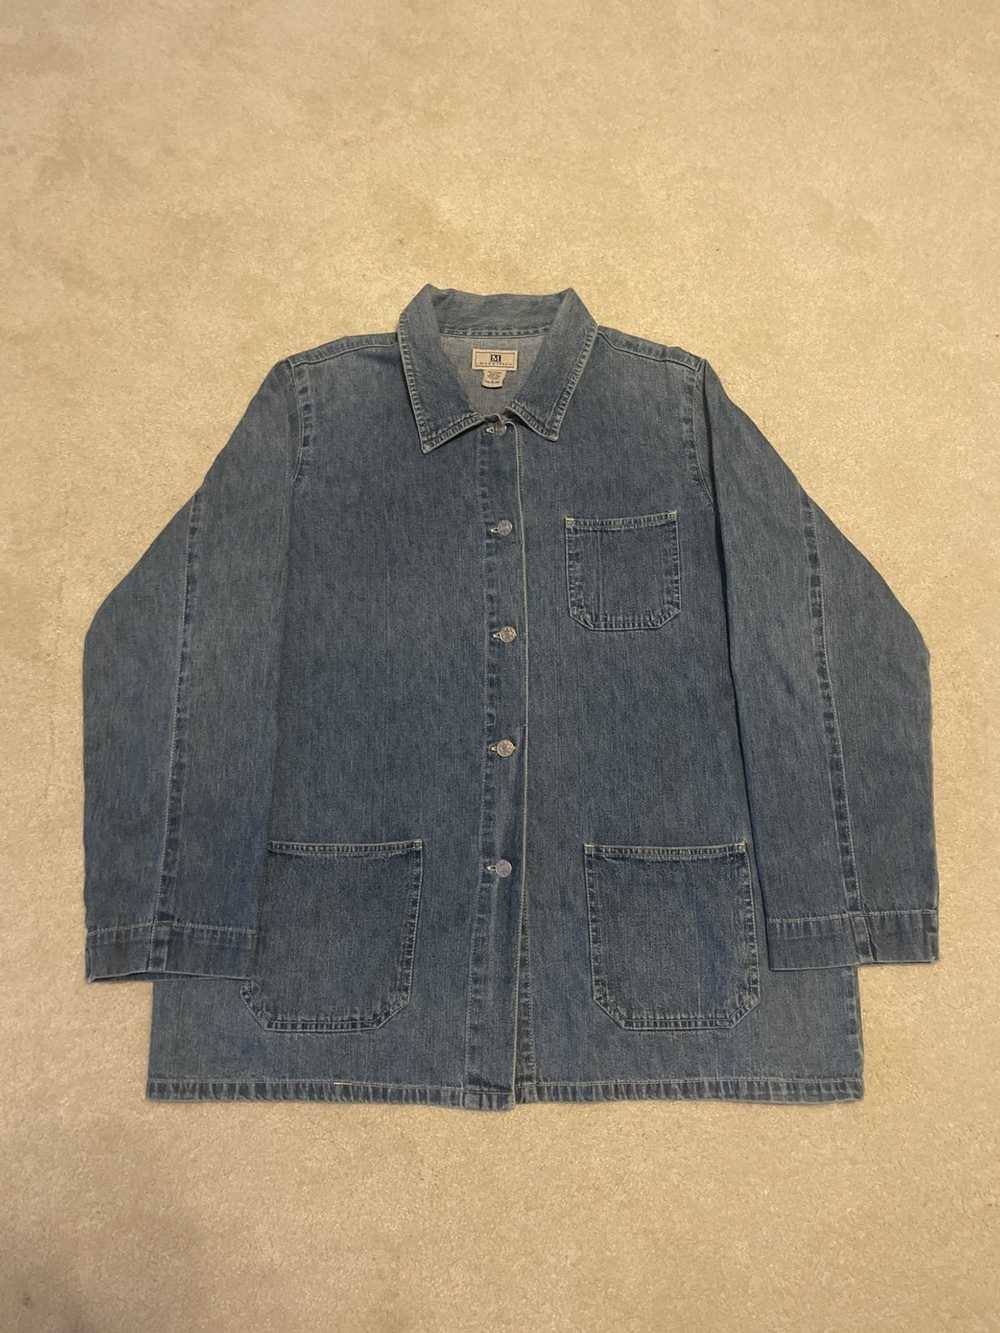 Vintage French workwear jacket type denim jacket - image 1